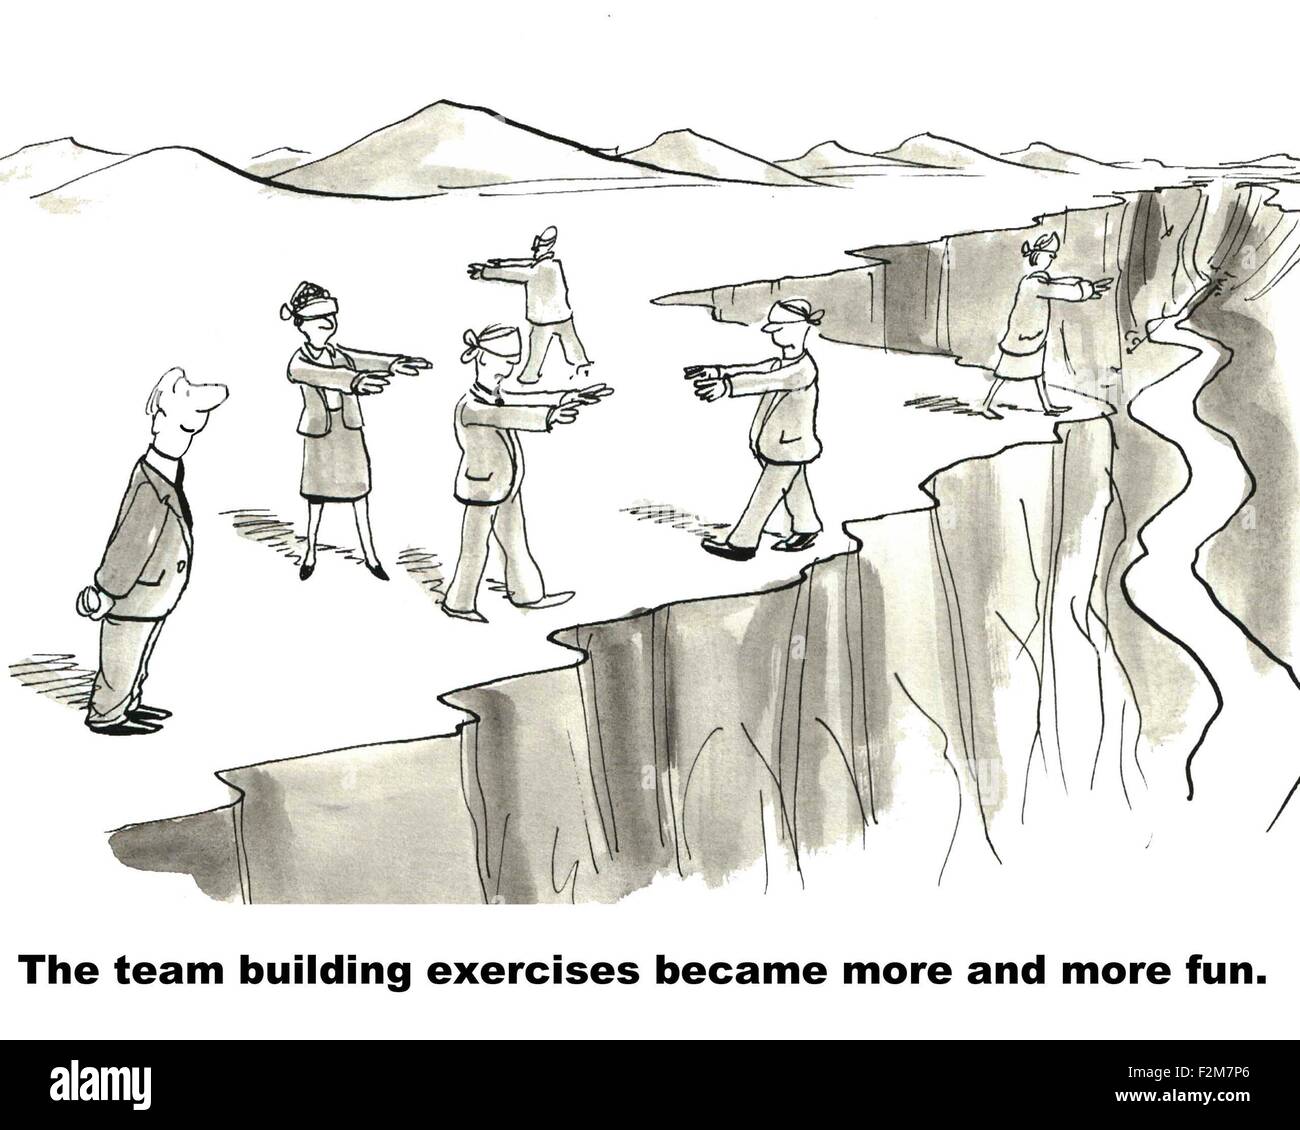 Business-Cartoon mit verbundenen Augen Geschäftsleute zu Fuß entlang einer Klippe "der Team-building-Übungen wurde mehr... Spaß". Stockfoto